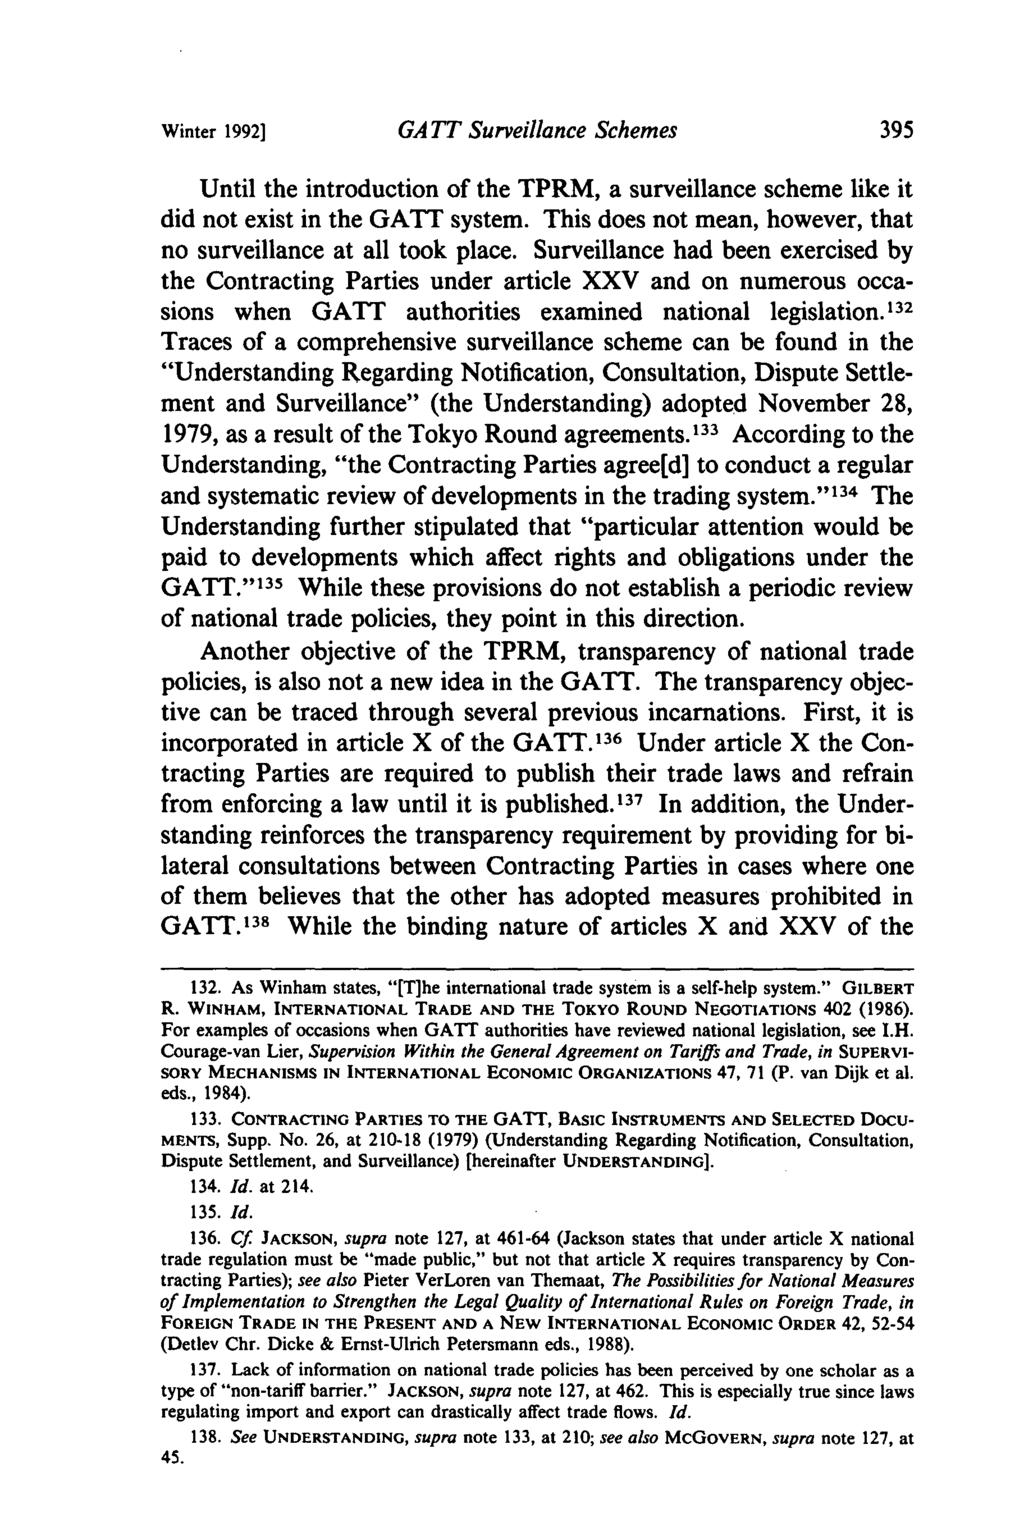 Winter 1992] GA TT Surveillance Schemes Until the introduction of the TPRM, a surveillance scheme like it did not exist in the GATT system.